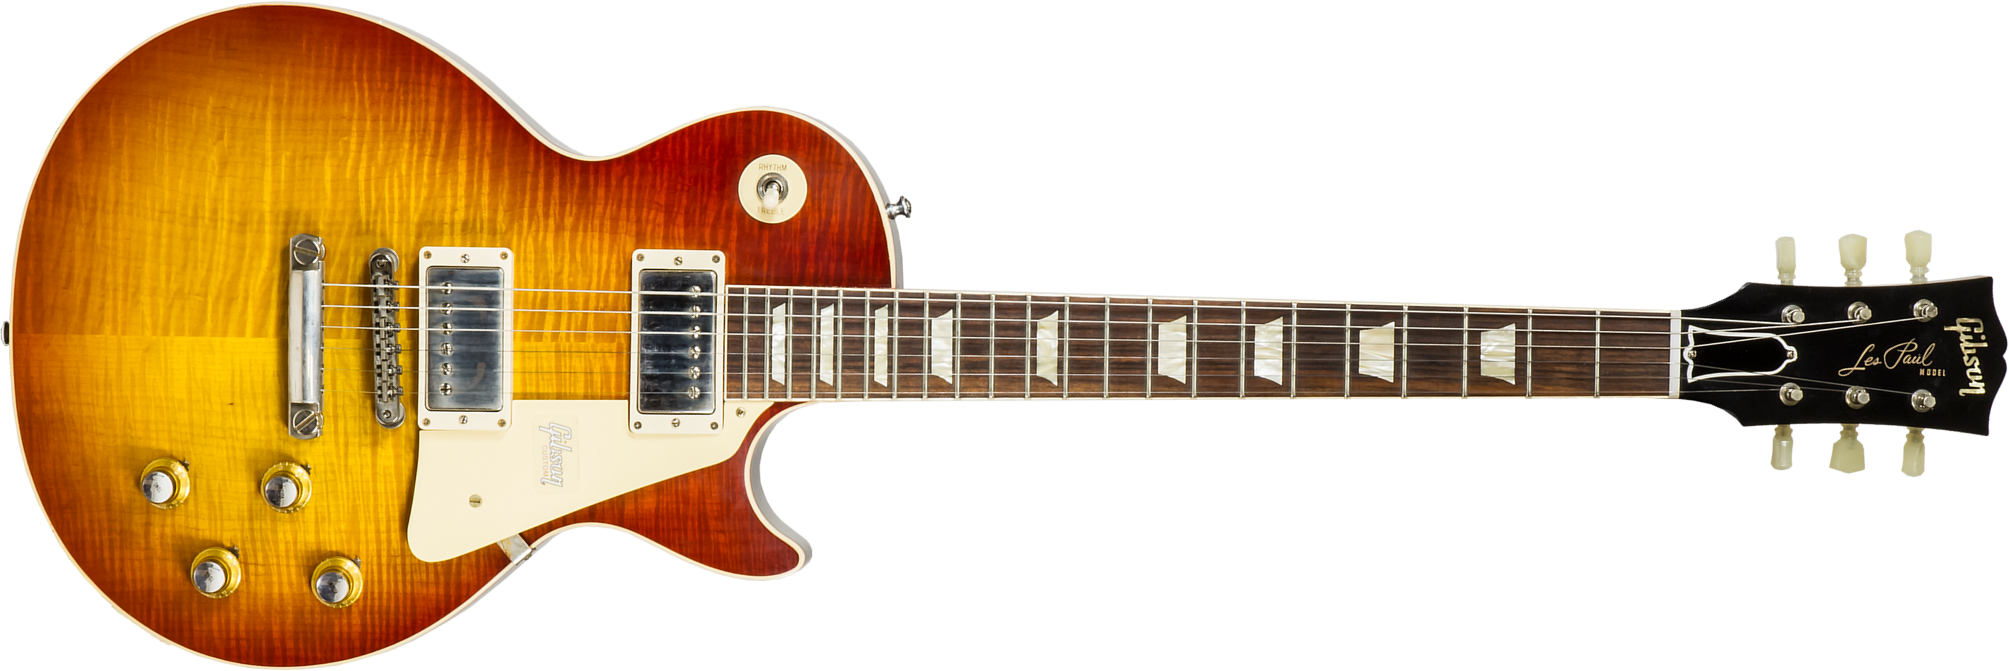 Gibson Custom Shop Les Paul Standard 1960 V2 60th Anniversary 2h Ht Rw #00492 - Vos Tomato Soup Burst - Guitare Électrique Single Cut - Main picture